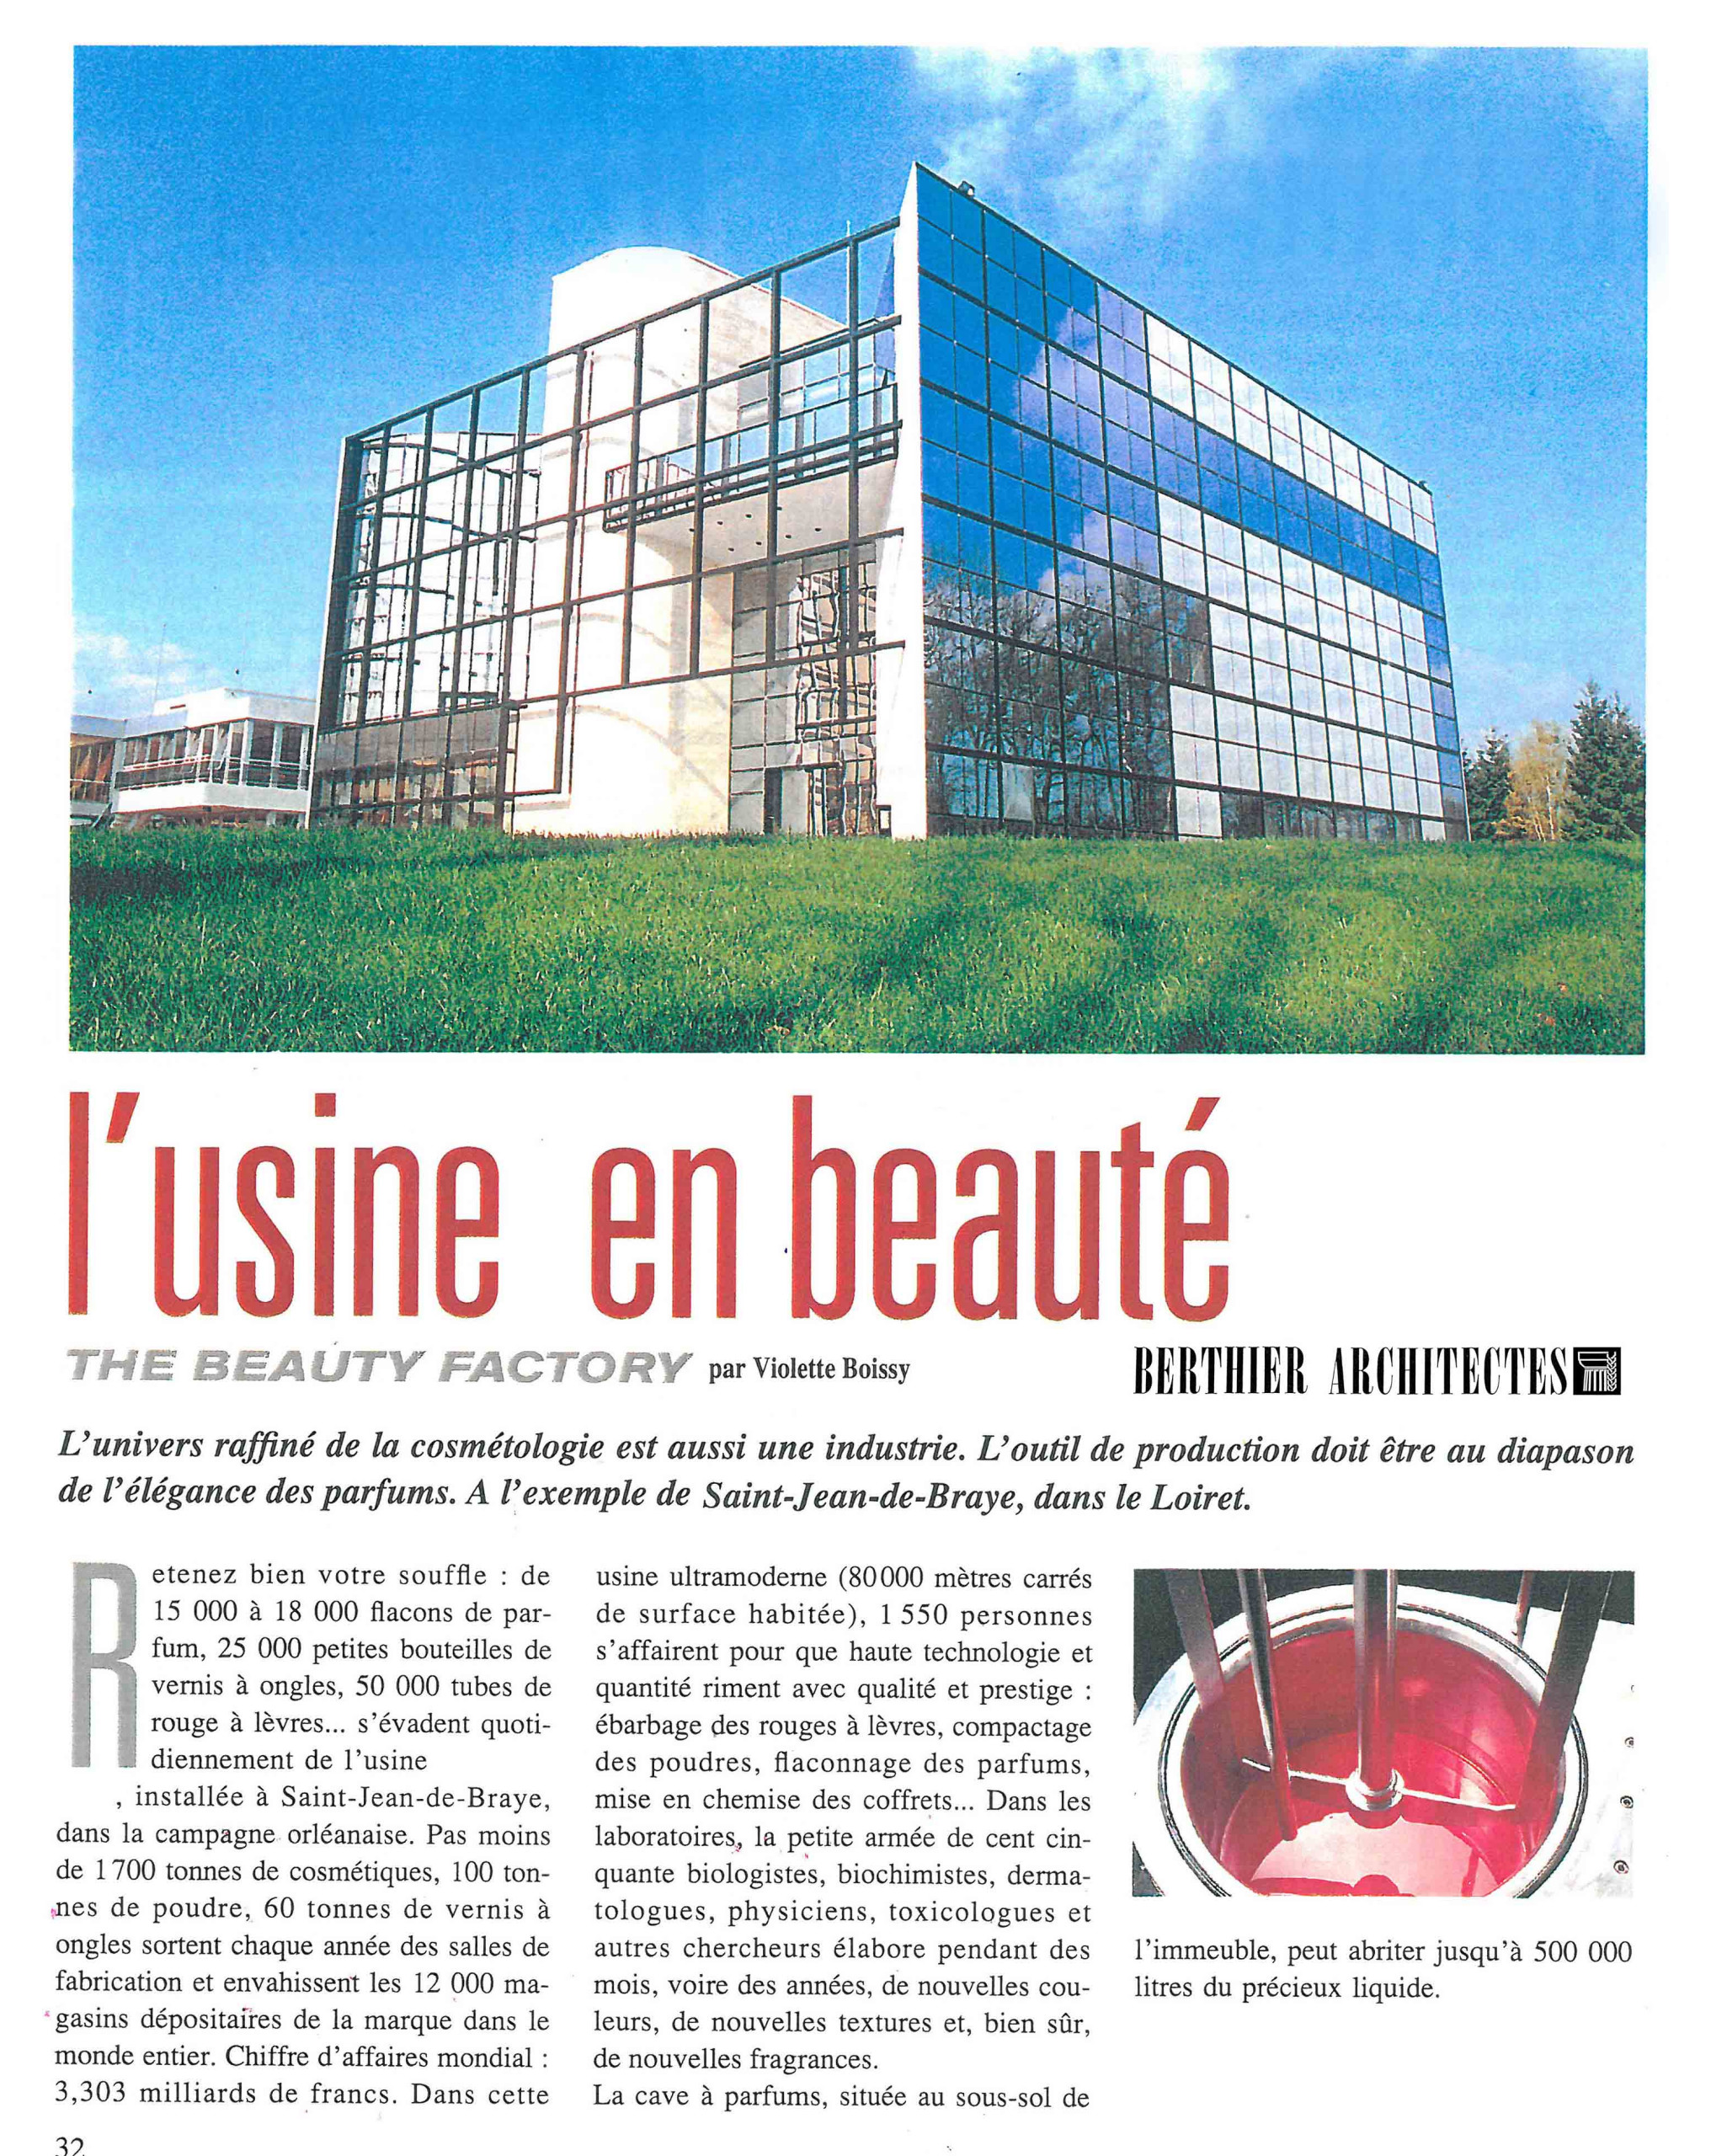 Site Industriel R&D Parfums - Loiret